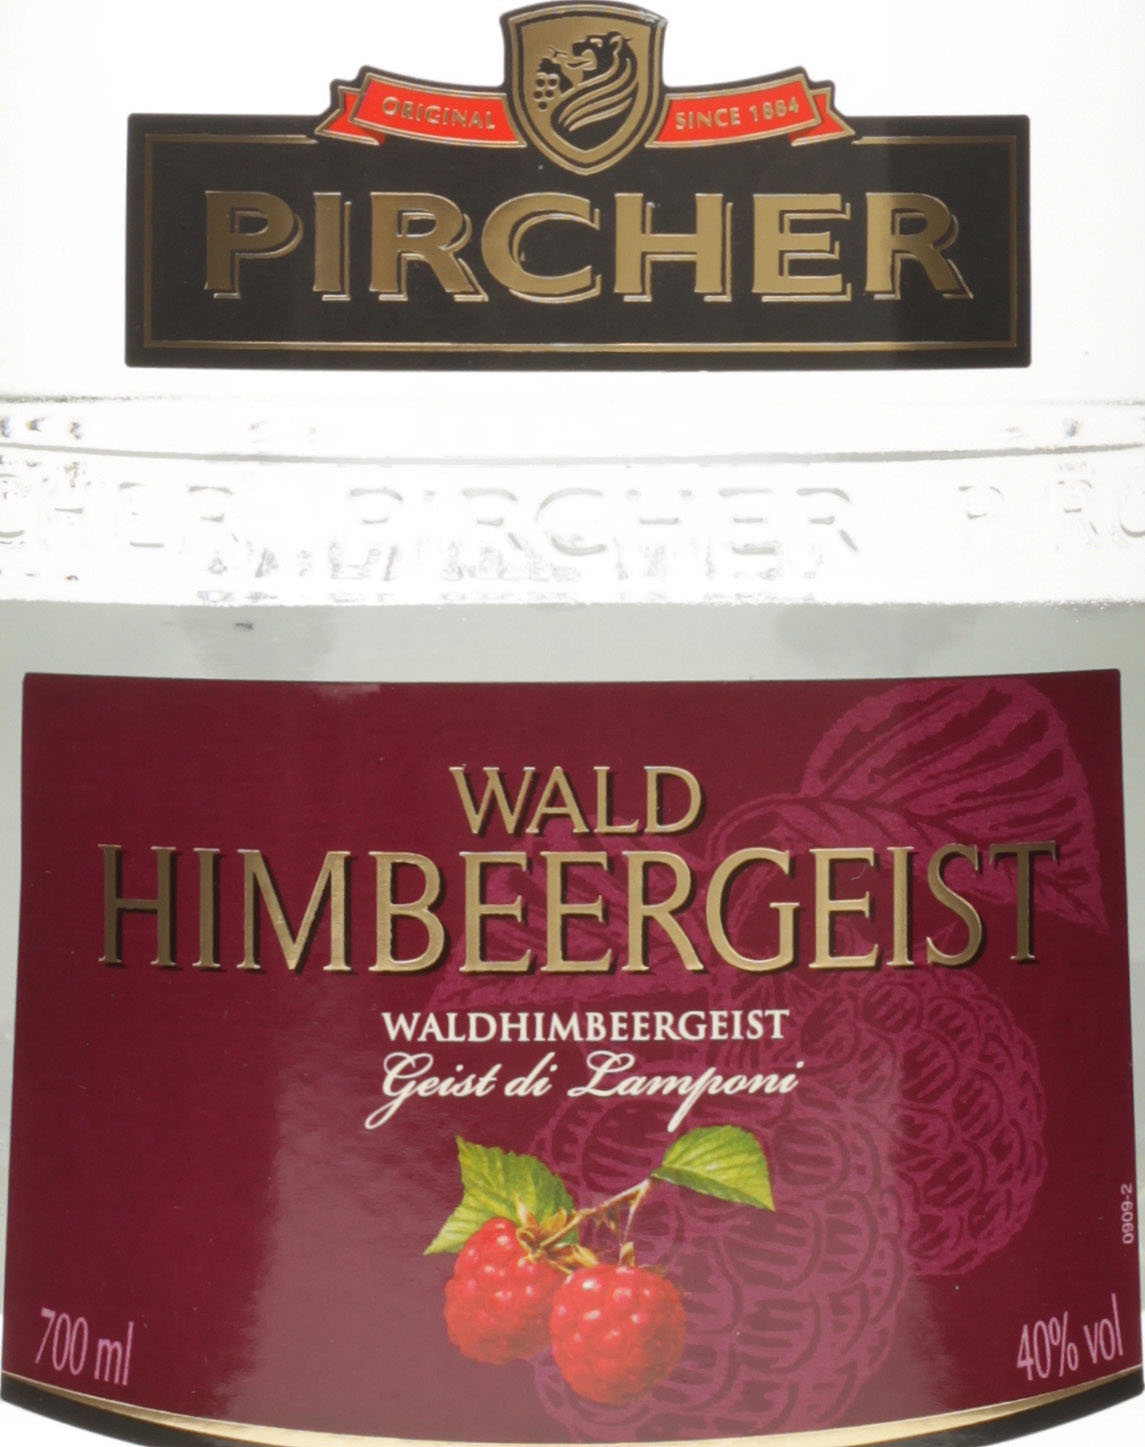 Pircher 40% 700ml Waldhimbeergeist